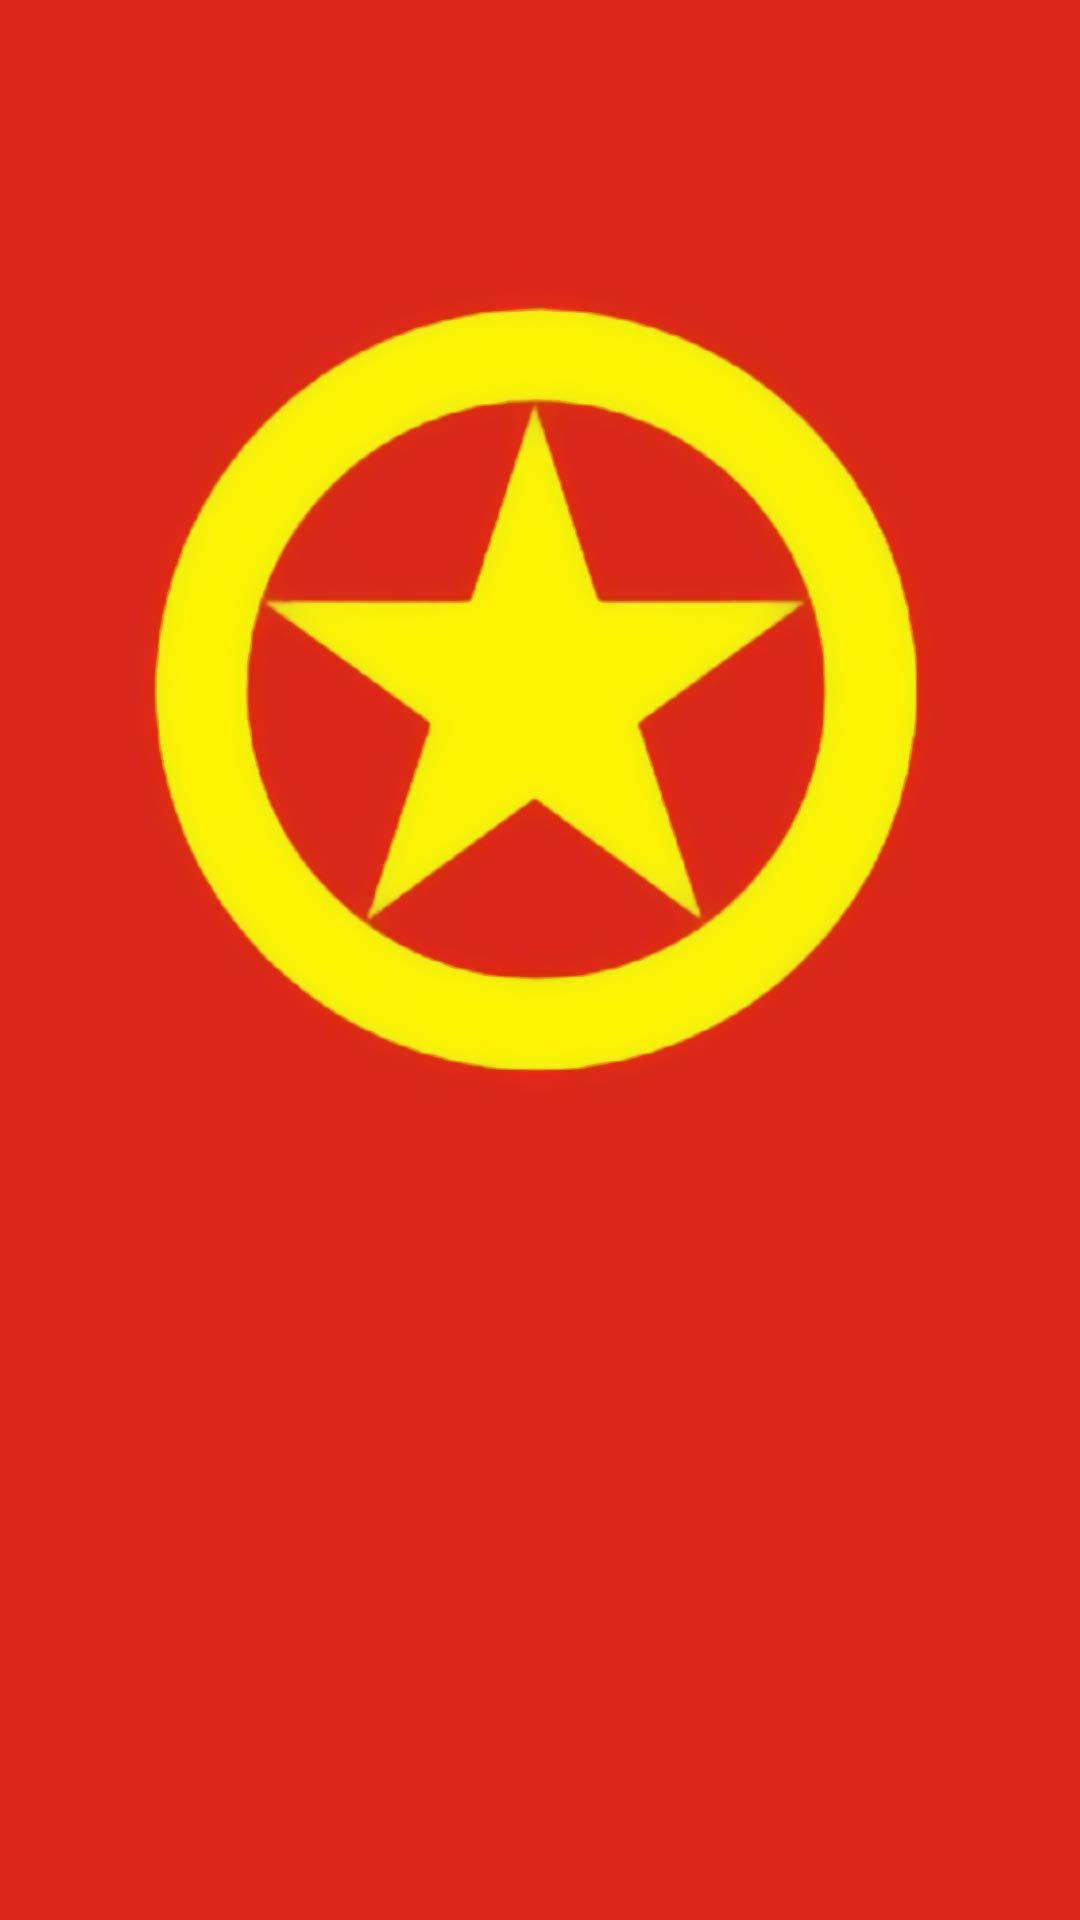 中国共青团团旗帜和团徽高清图片手机壁纸下载